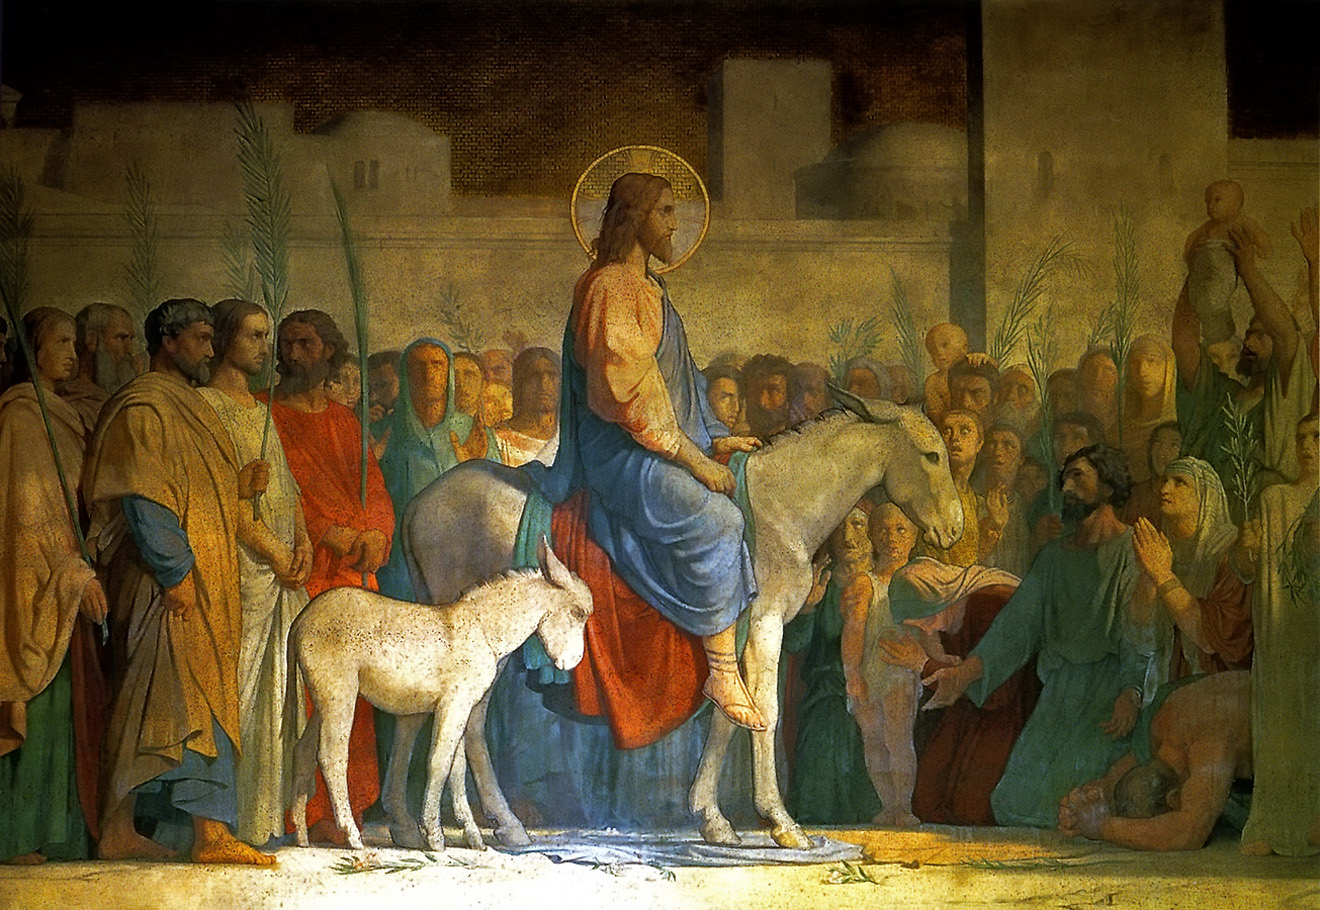 Christ's Entry into Jerusalem by Hippolyte Flandrin c. 1842